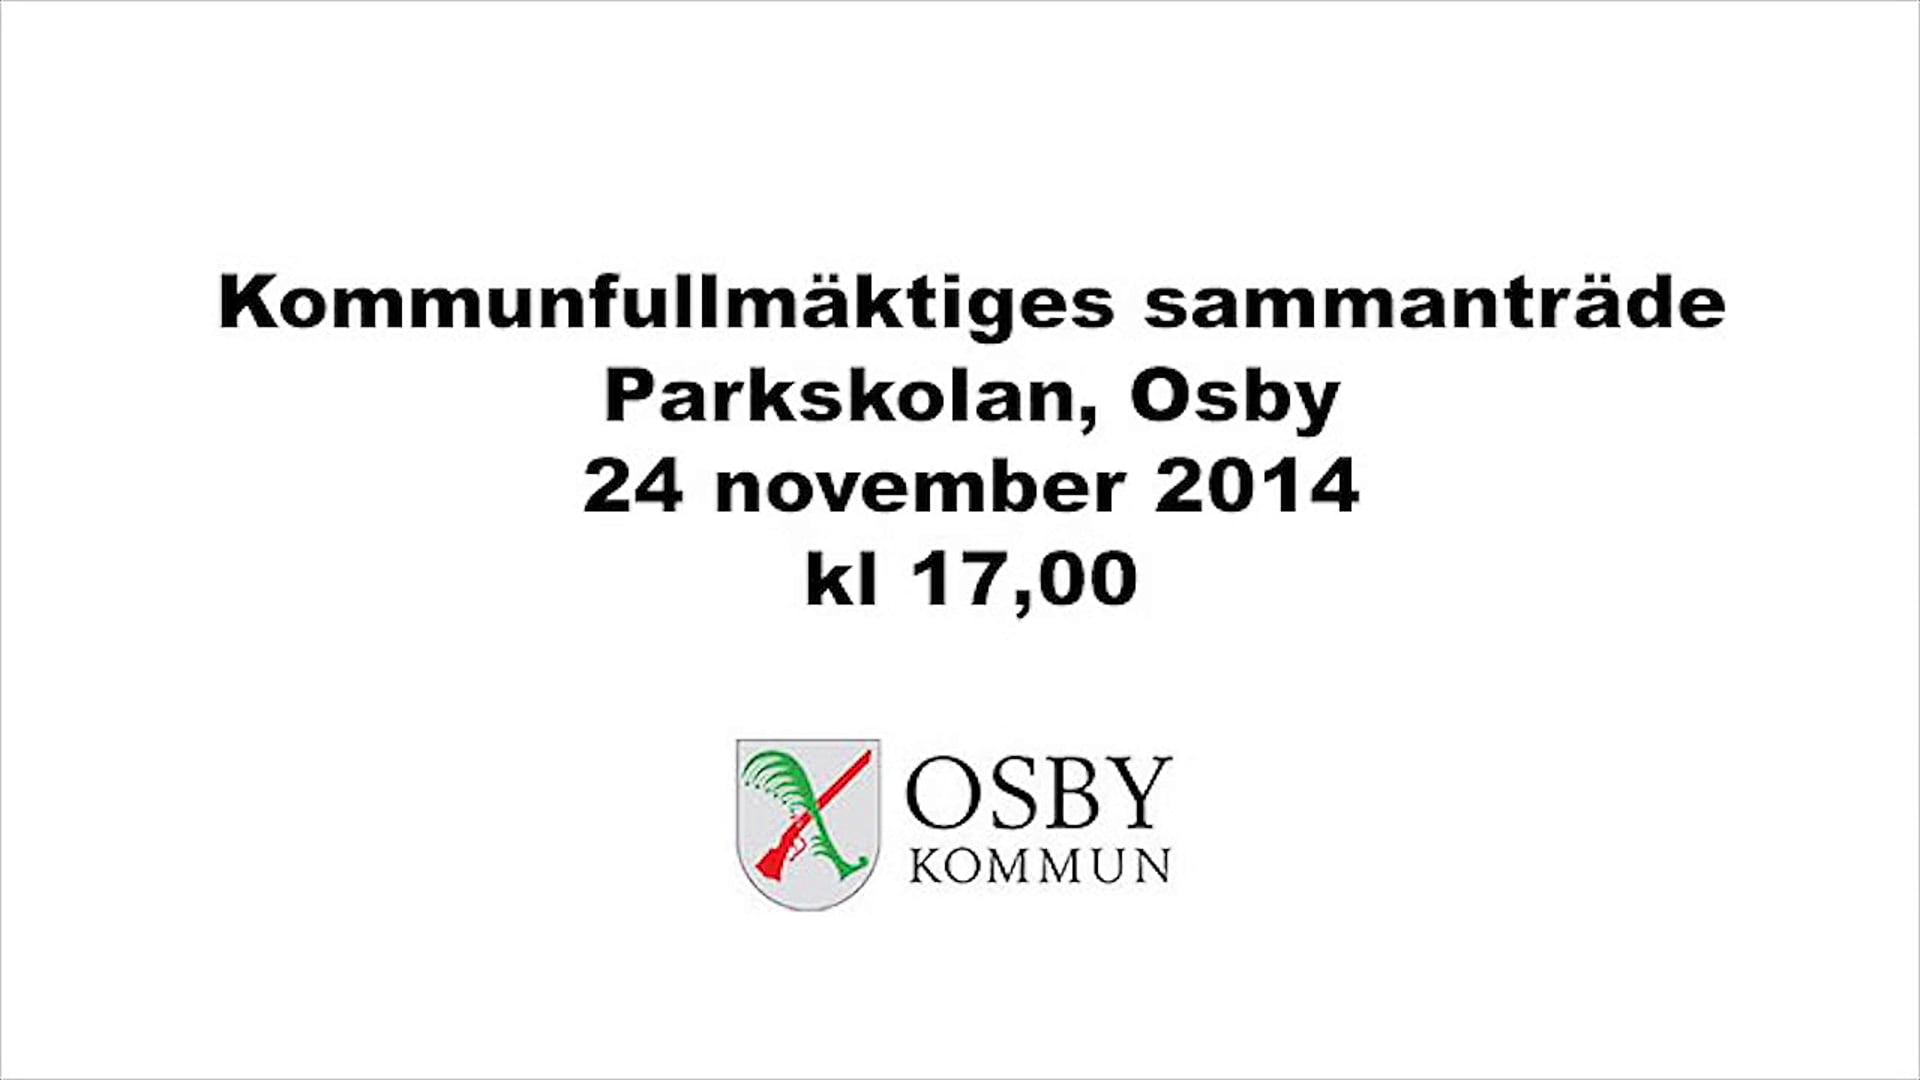 Osby kommunfullmäktiges sammanträde, kort exempel.